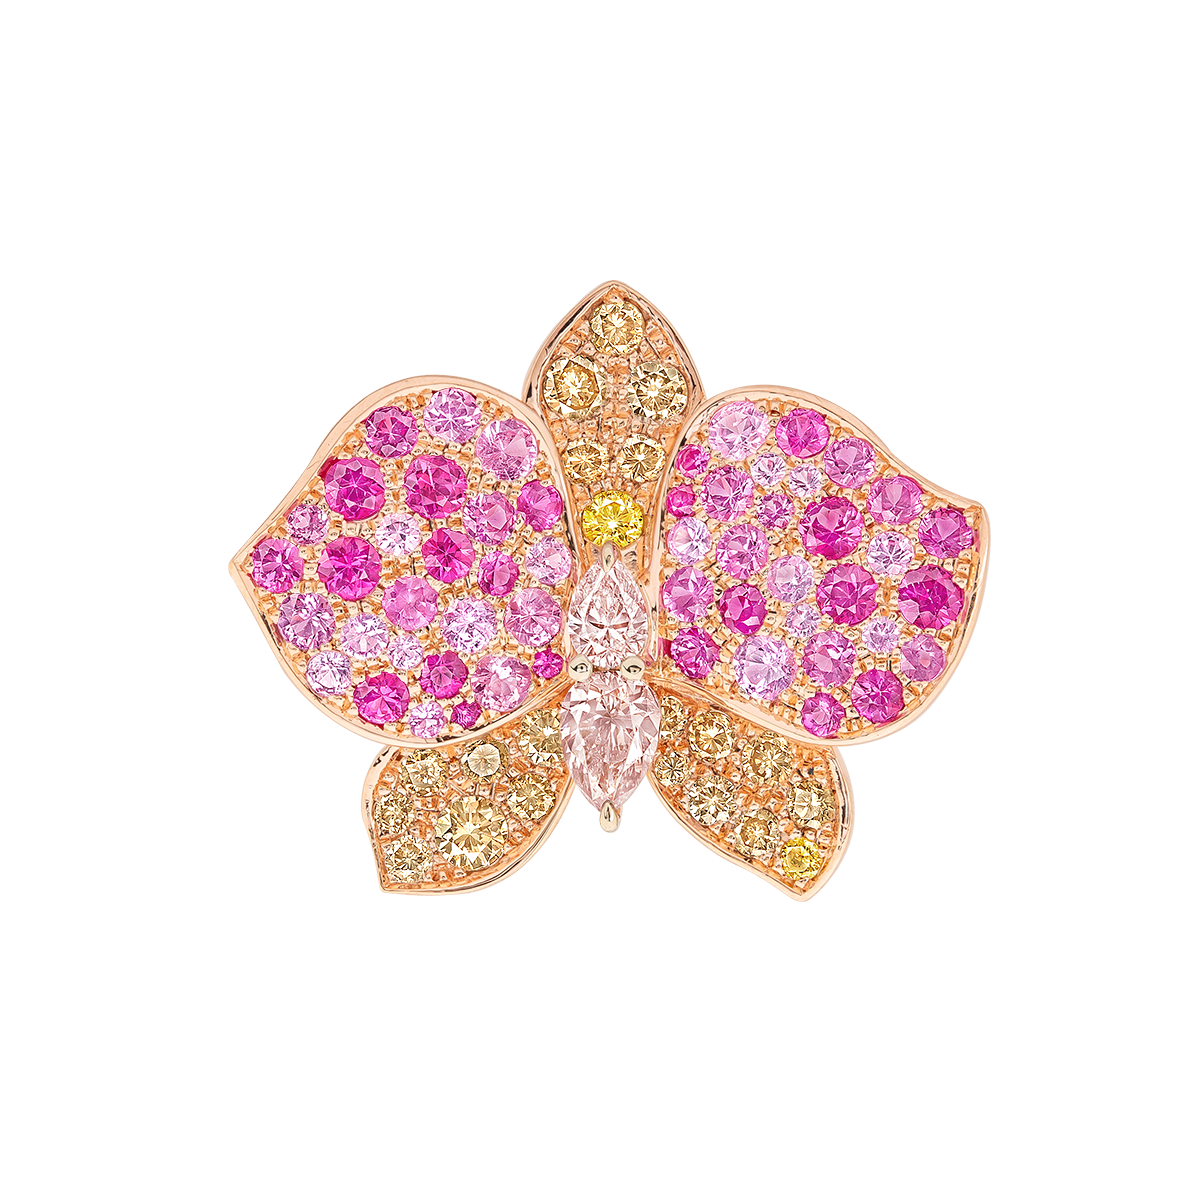 彩鑽蝴蝶蘭花戒
Multi-Colored Diamond 
Moth Orchid Ring